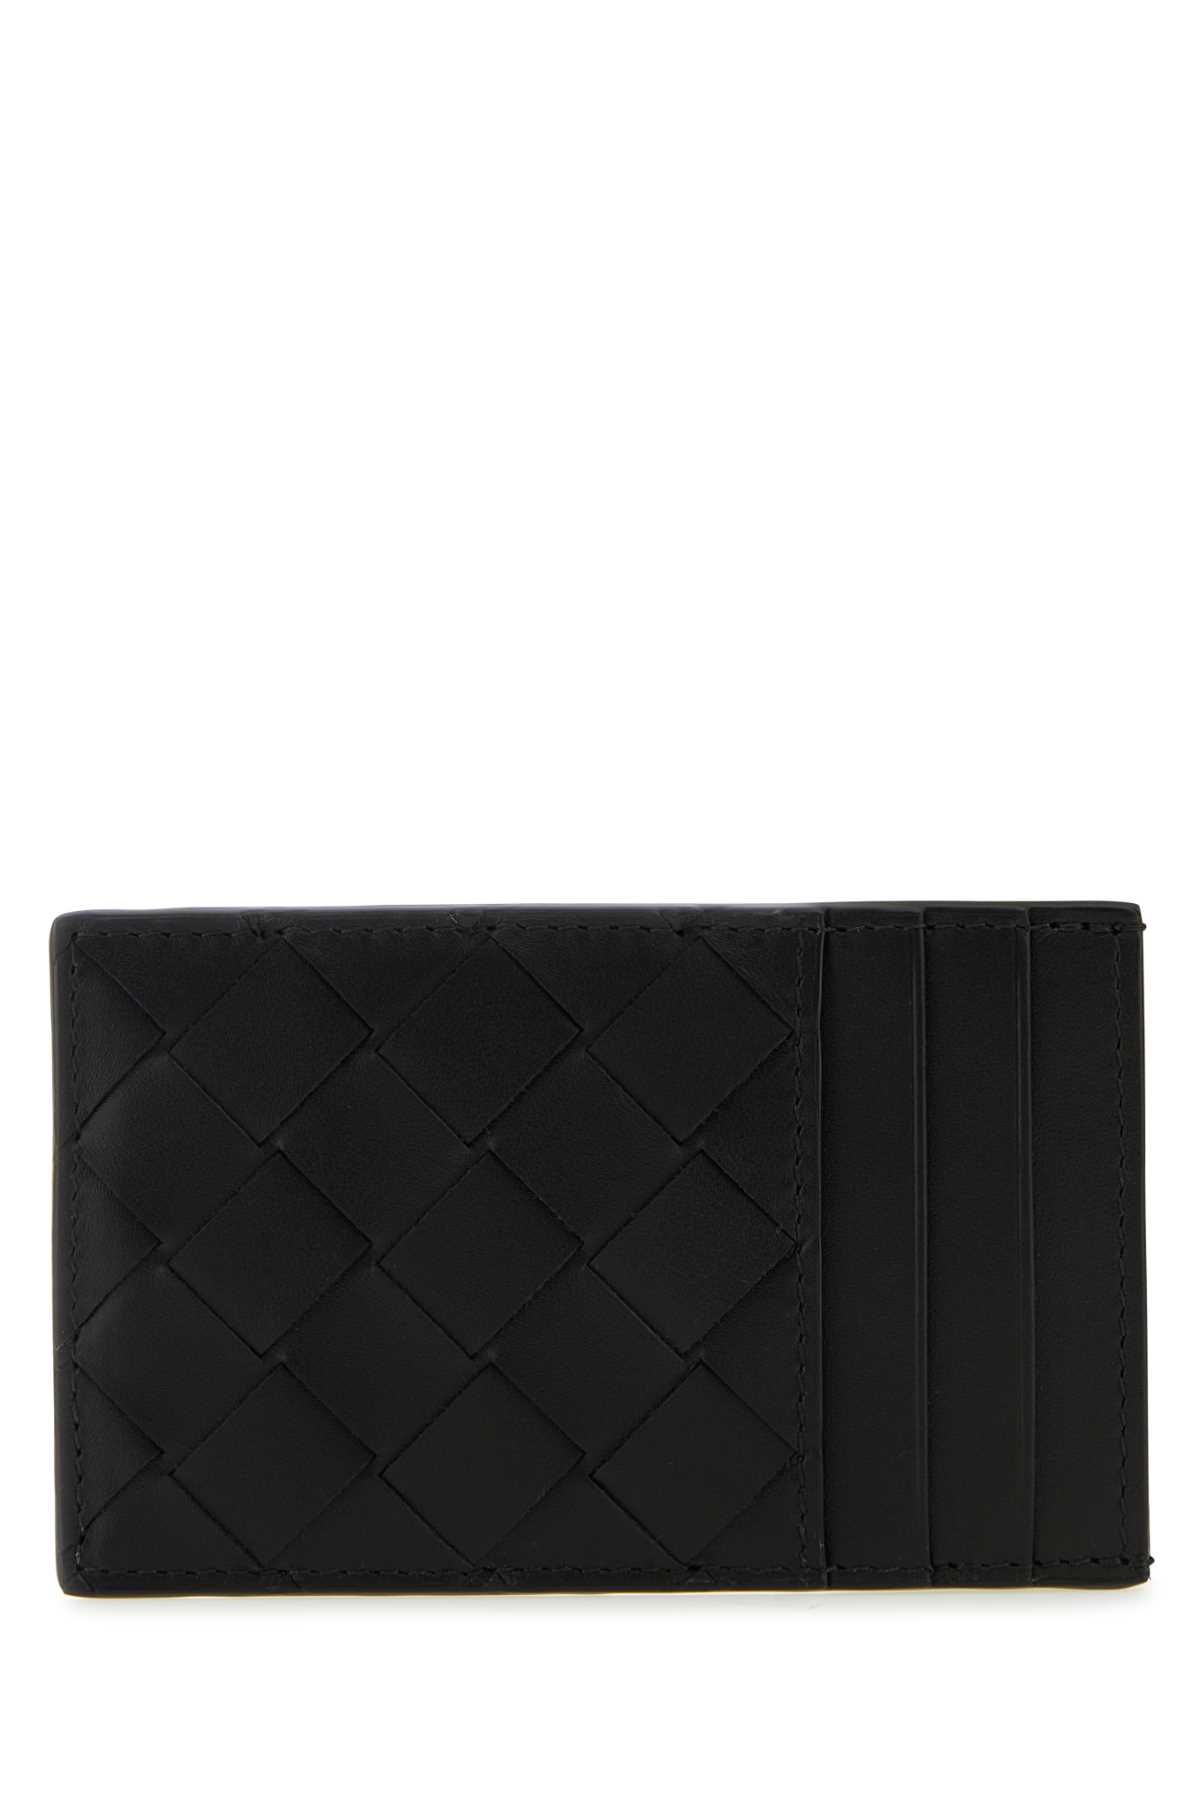 Shop Bottega Veneta Black Leather Cardholder In Blacksilver